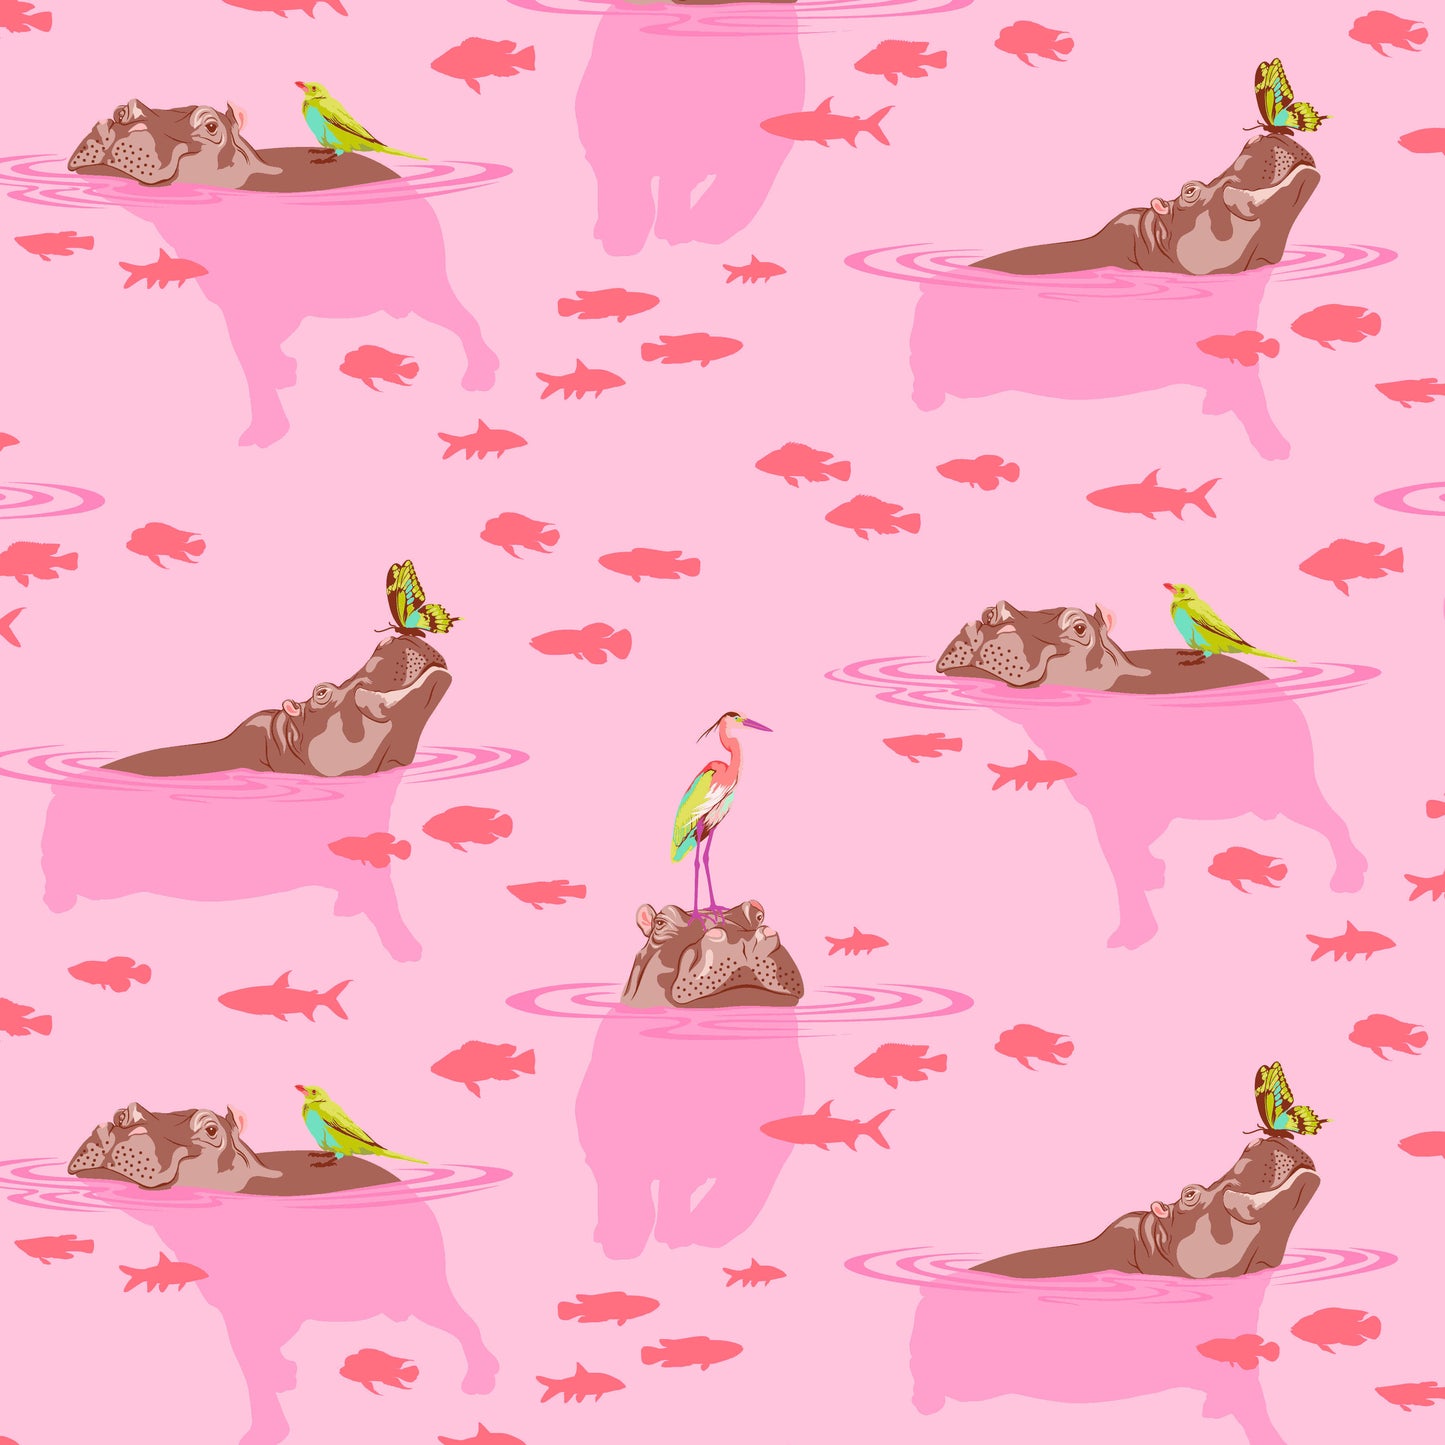 Tula Pink-Everglow-My Hippos Don’t Lie-Nova